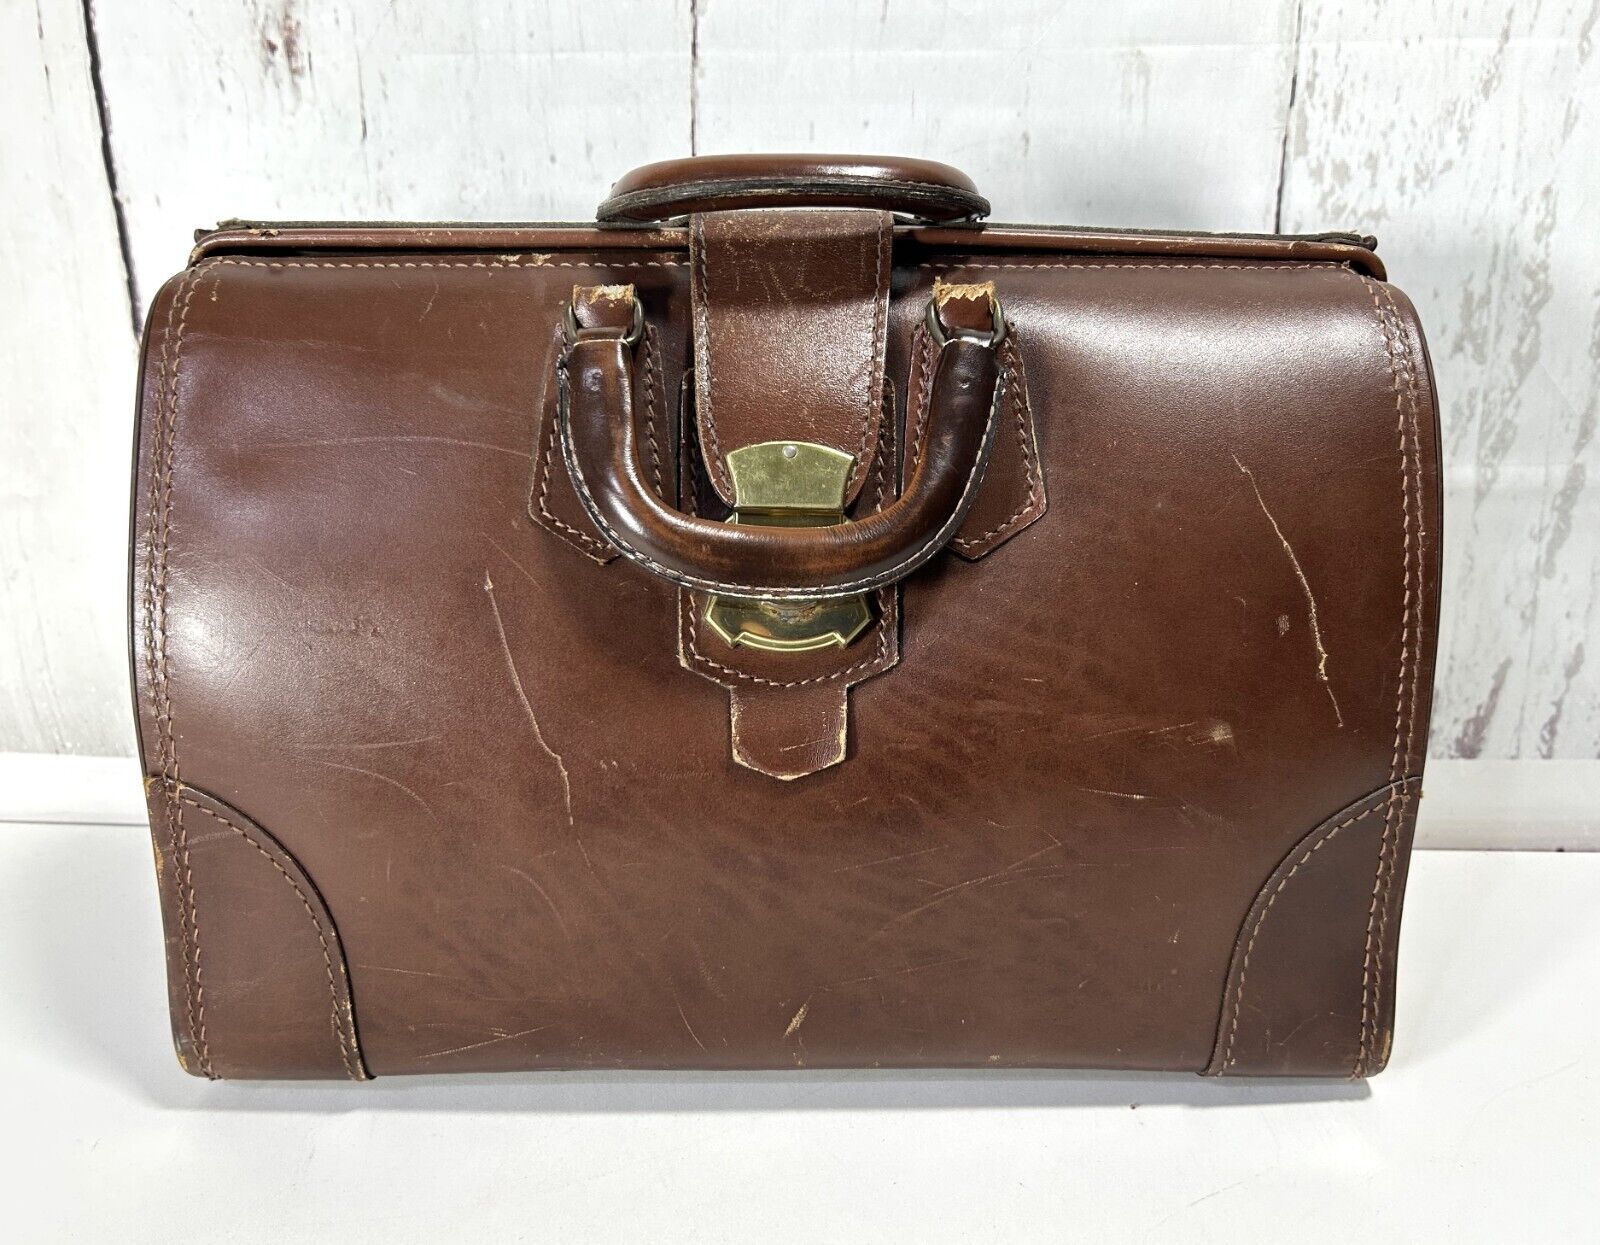 Antique Doctor's Large Brown Leather Medical Vintage Bag 16"x12"x7.5"